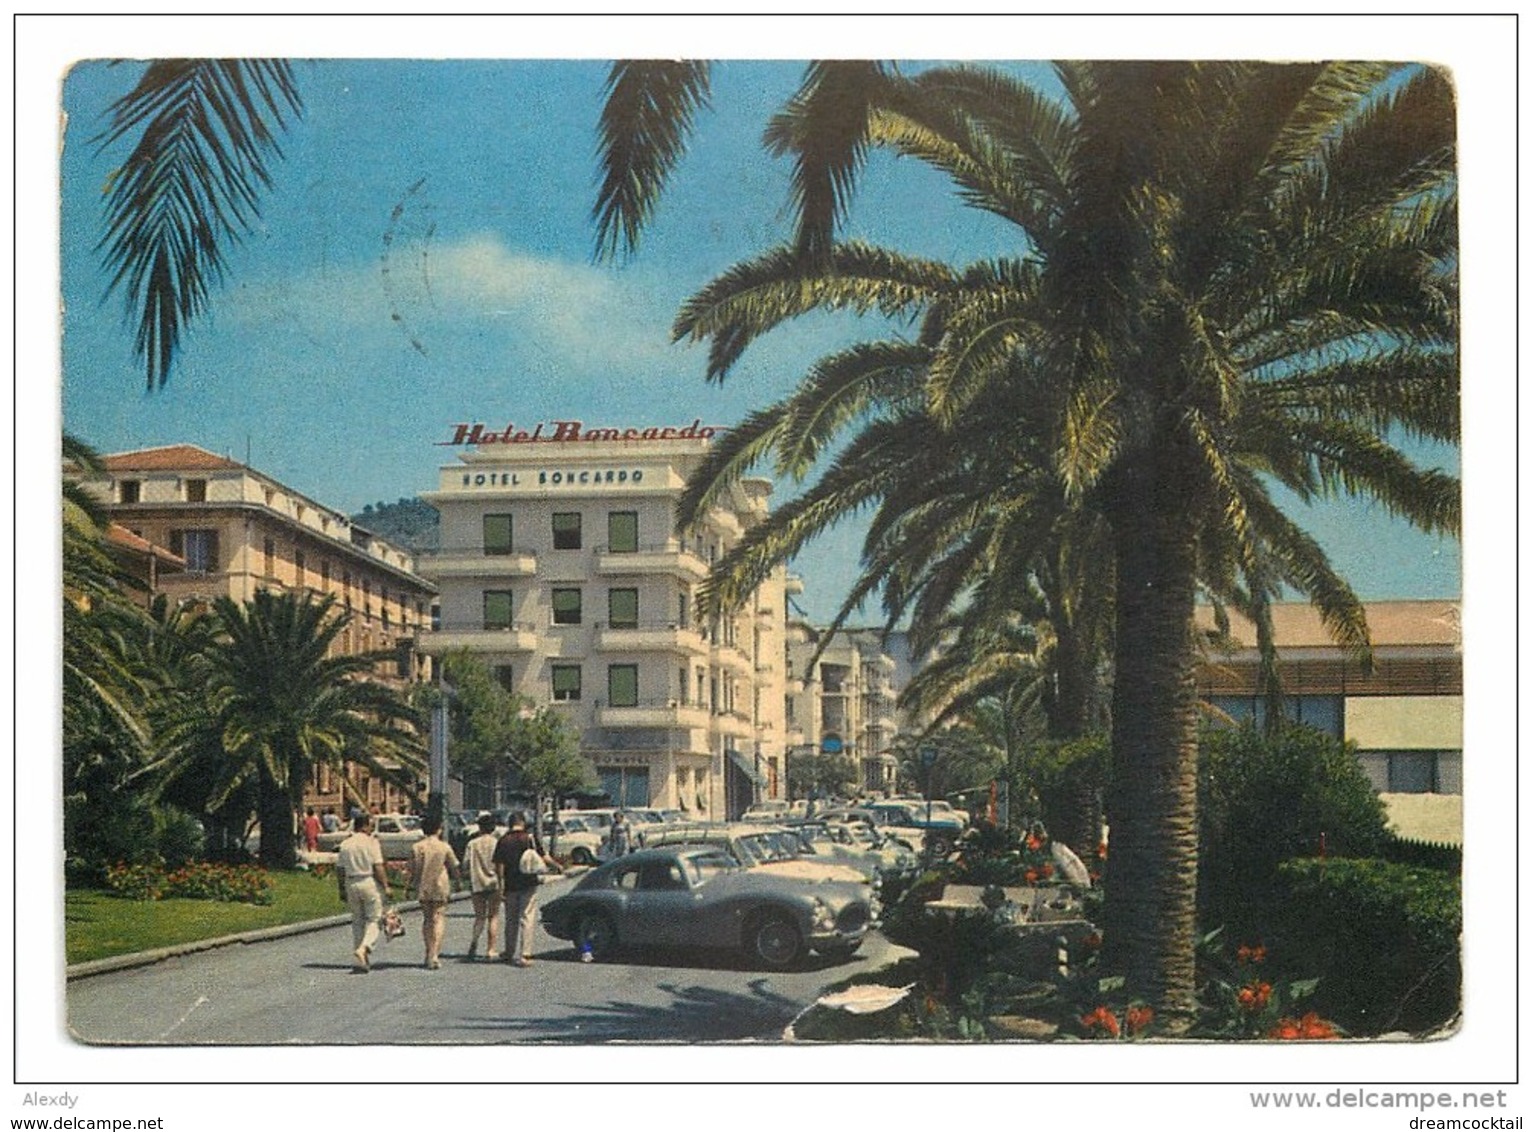 Photo Cpm VOITURES. Fiat 8V. Hotel Boncardo à FINALE LIGURE - Voitures De Tourisme